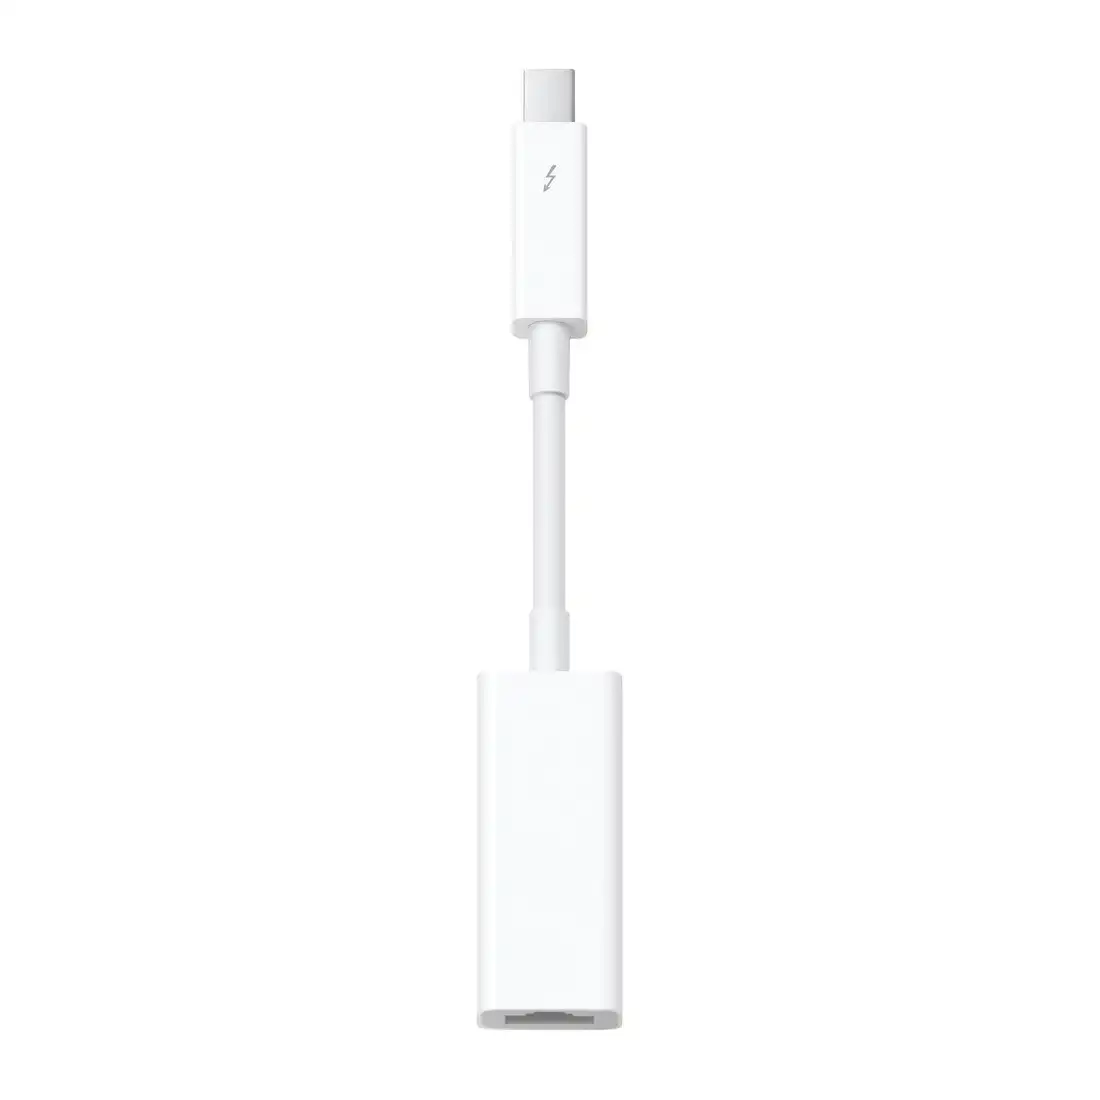 Apple Thunderbolt to Ethernet Adapter - White